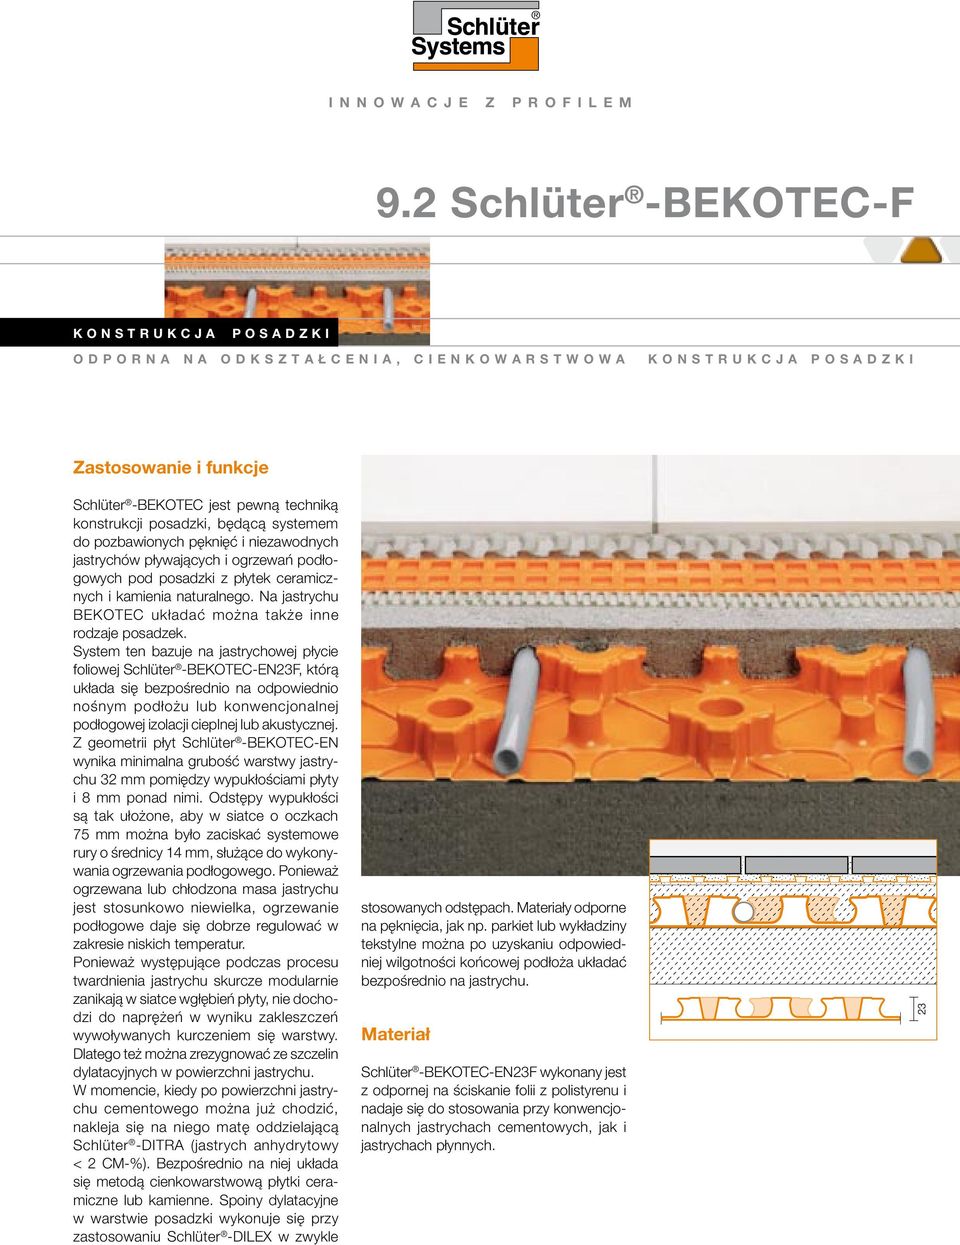 Schlüter -BEKOTEC jest pewną techniką konstrukcji posadzki, będącą systemem do pozbawionych pęknięć i niezawodnych jastrychów pływających i ogrzewań podłogowych pod posadzki z płytek ceramicznych i